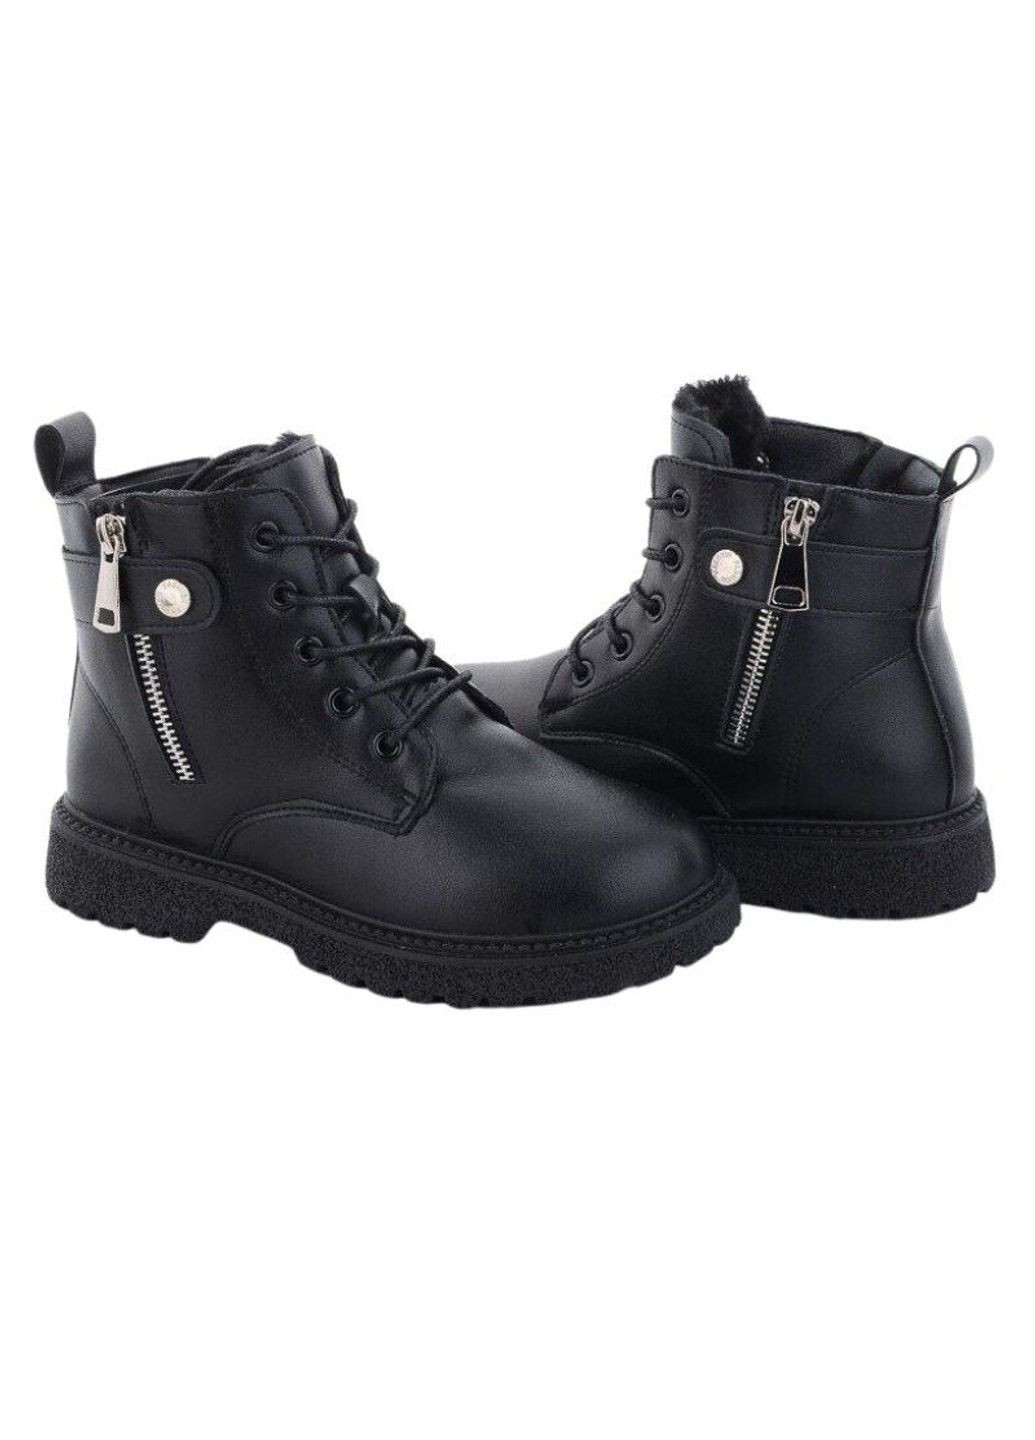 Черные осенние ботинки для девочки (еврозима) Paliament